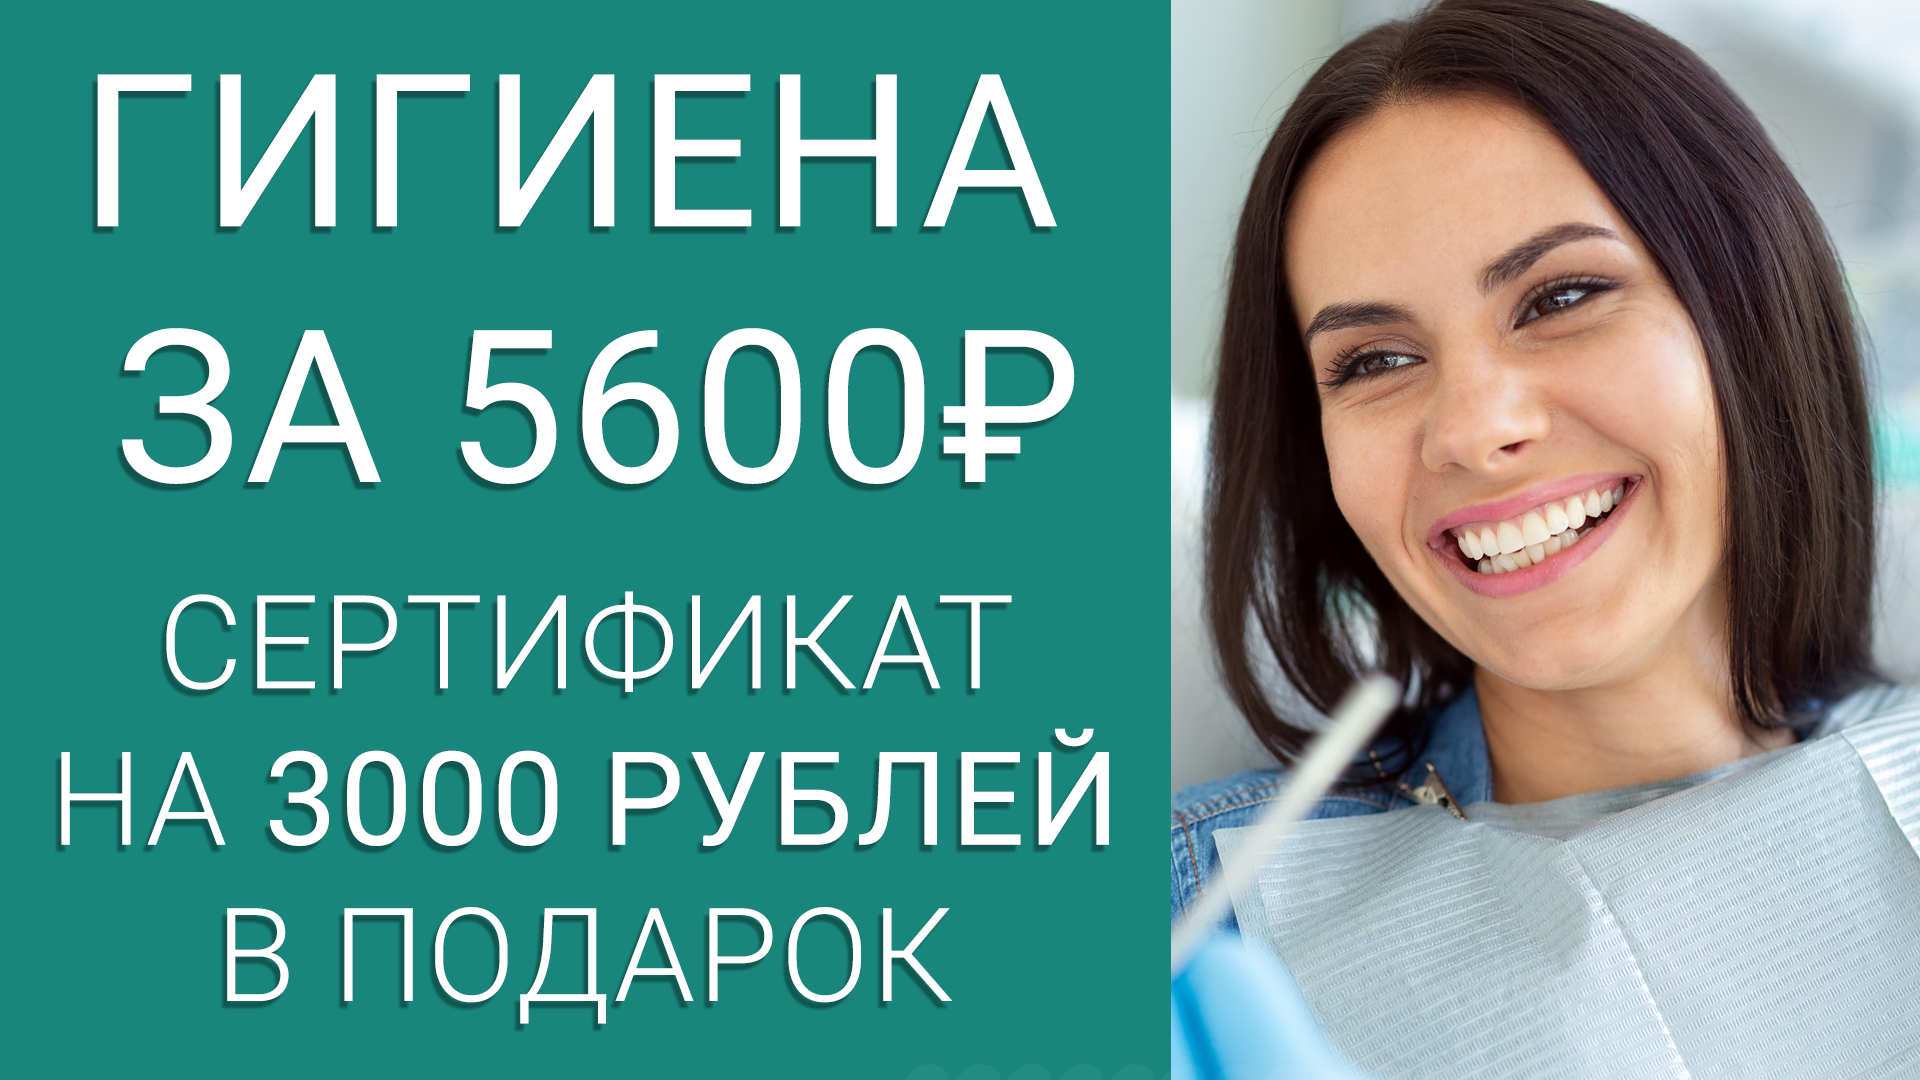 Профгигиена 5600 руб + сертификат на 3000 в подарок!